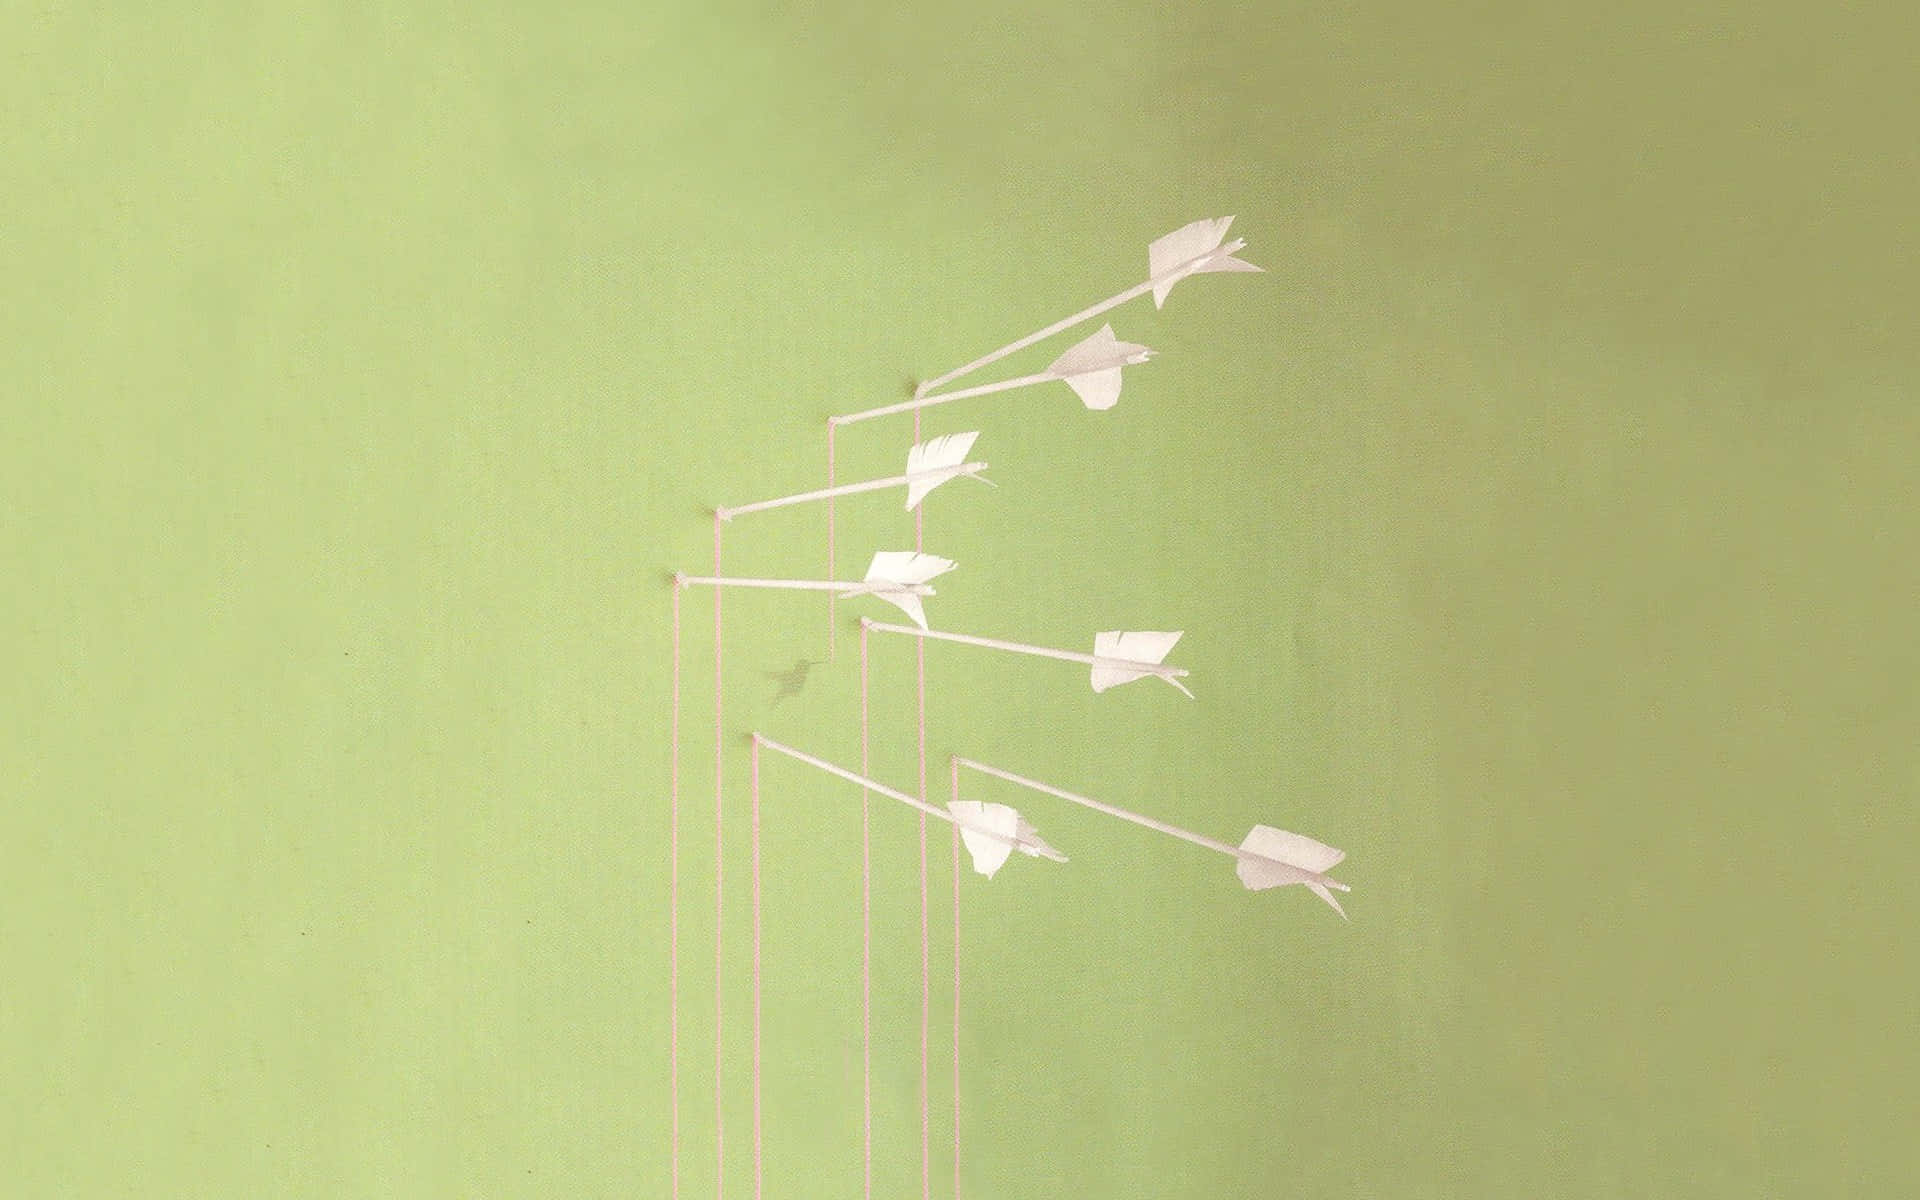 Ungrupo De Pájaros De Papel En Una Pared Verde Fondo de pantalla